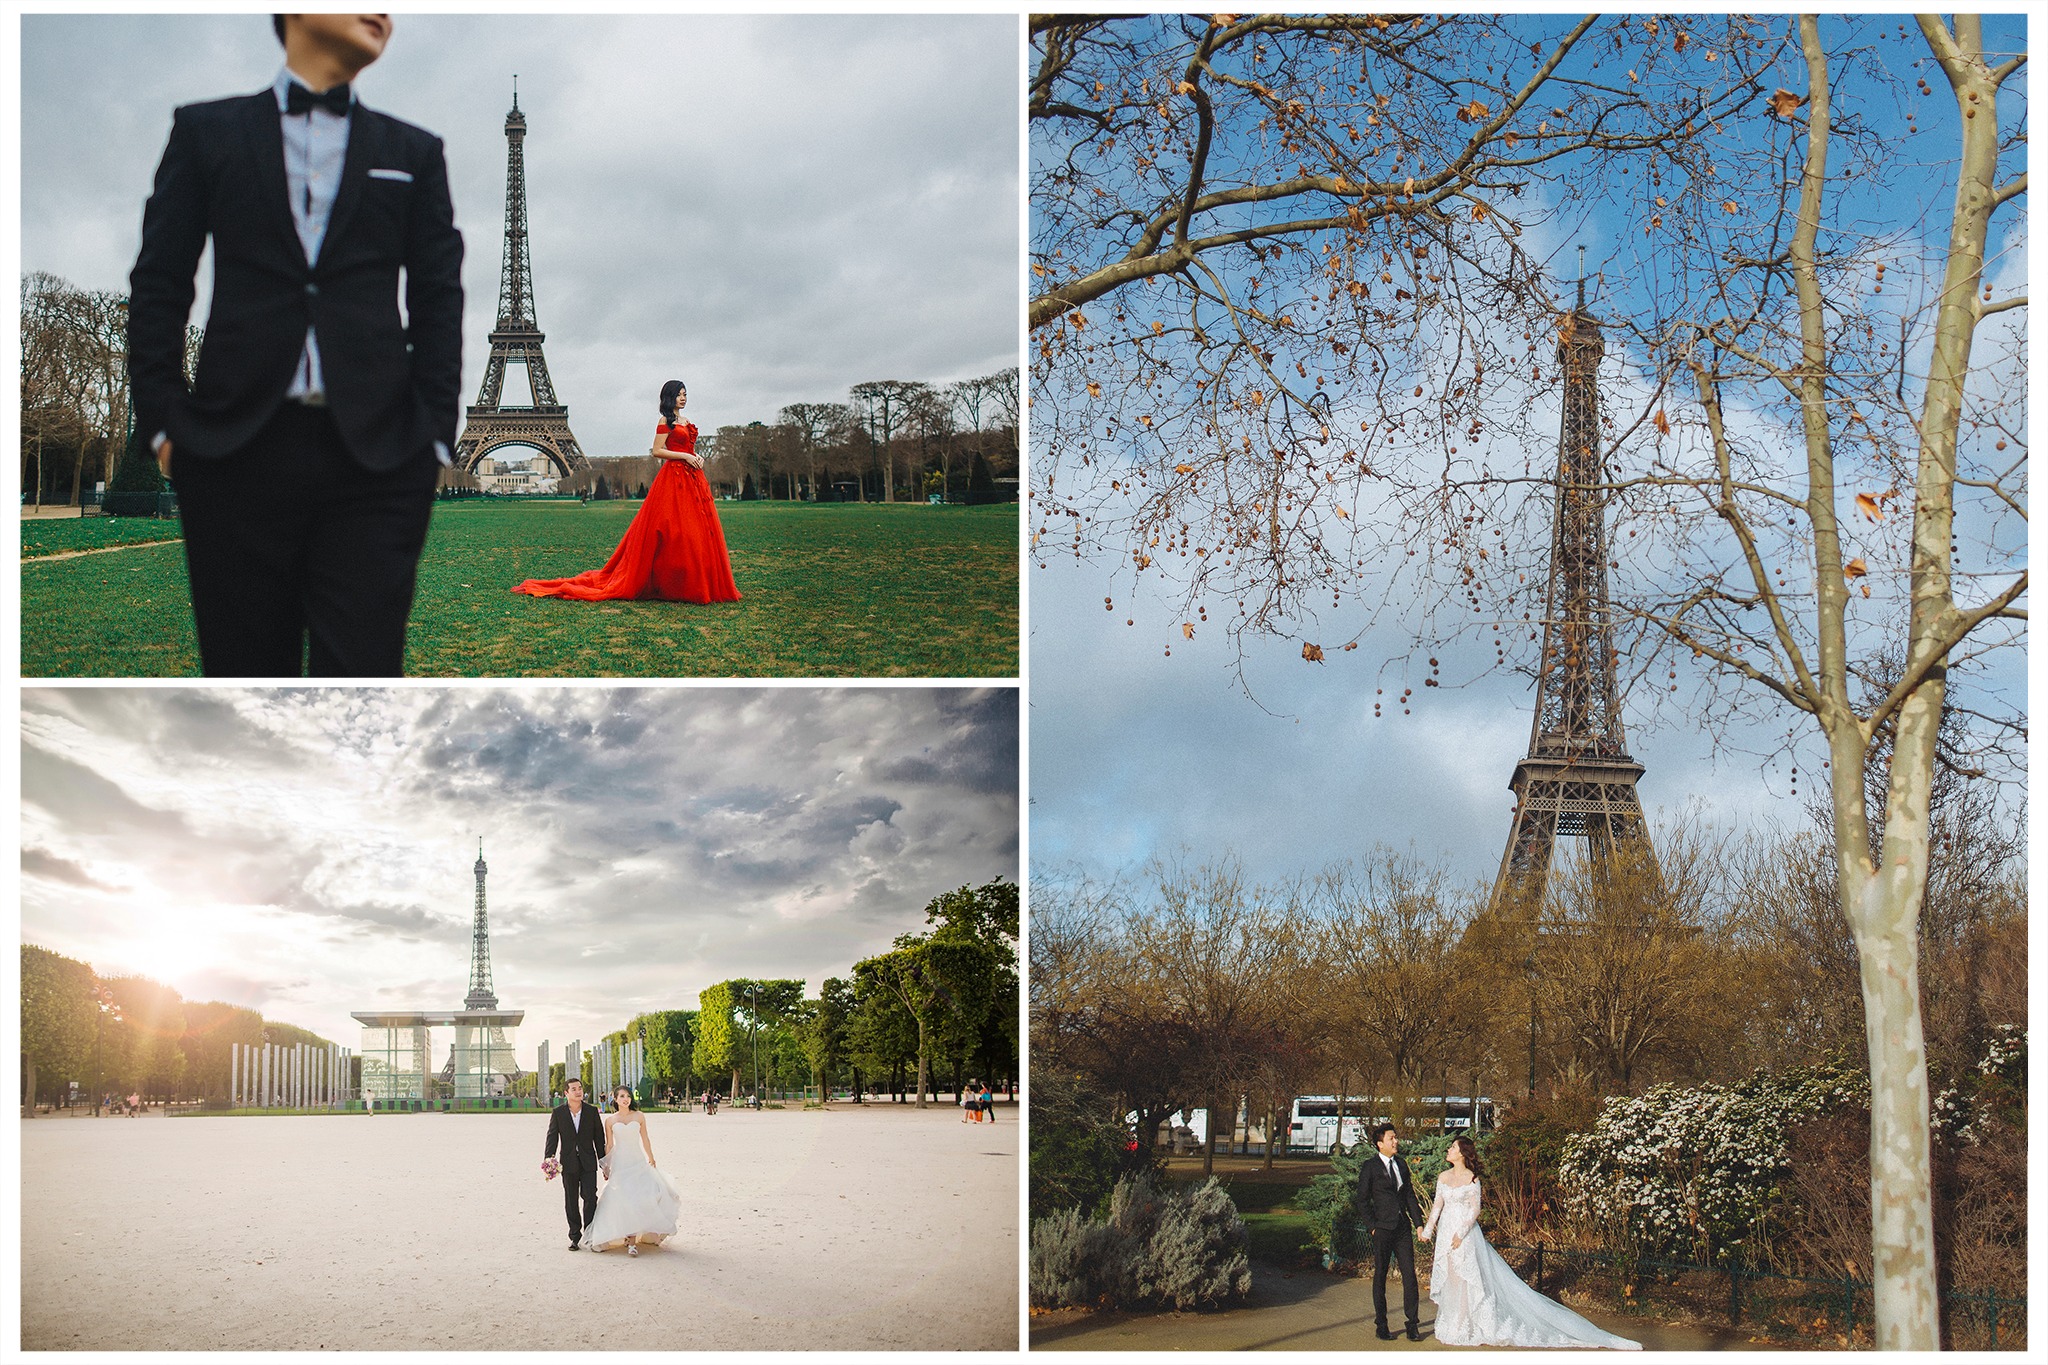 Nhiếp ảnh gia Việt gợi ý điểm chụp ảnh “rất tình” khi du lịch ở Paris - 6